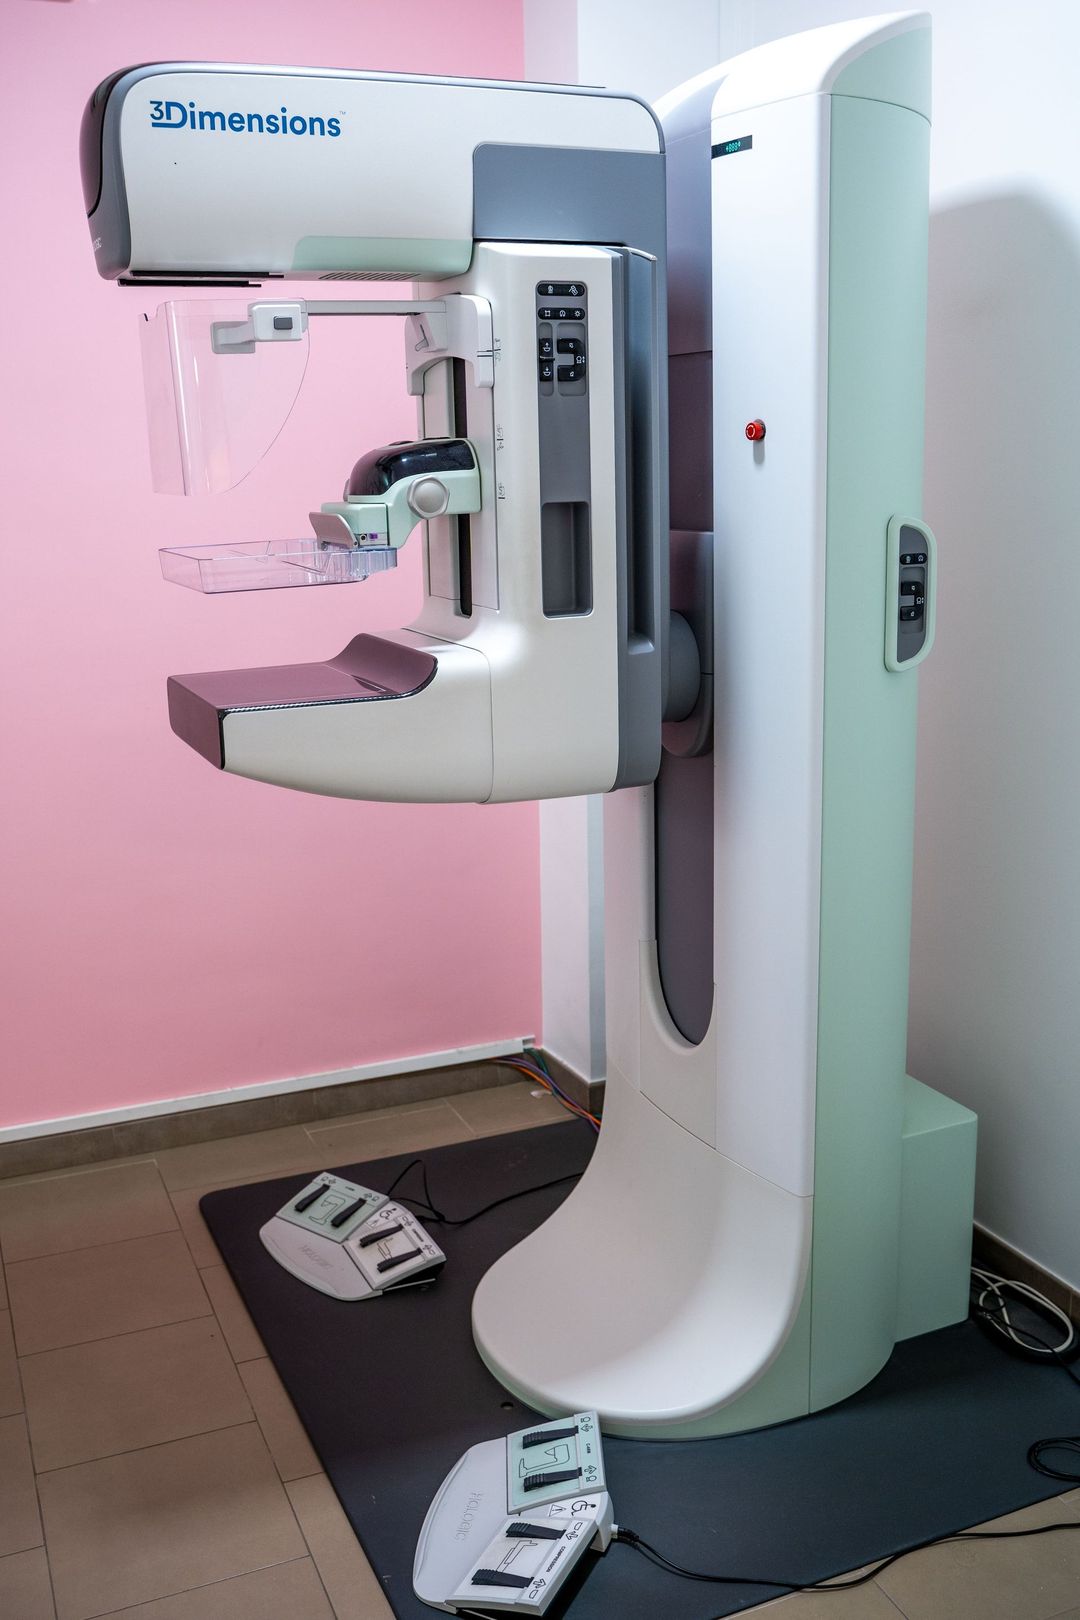 Digital radiology